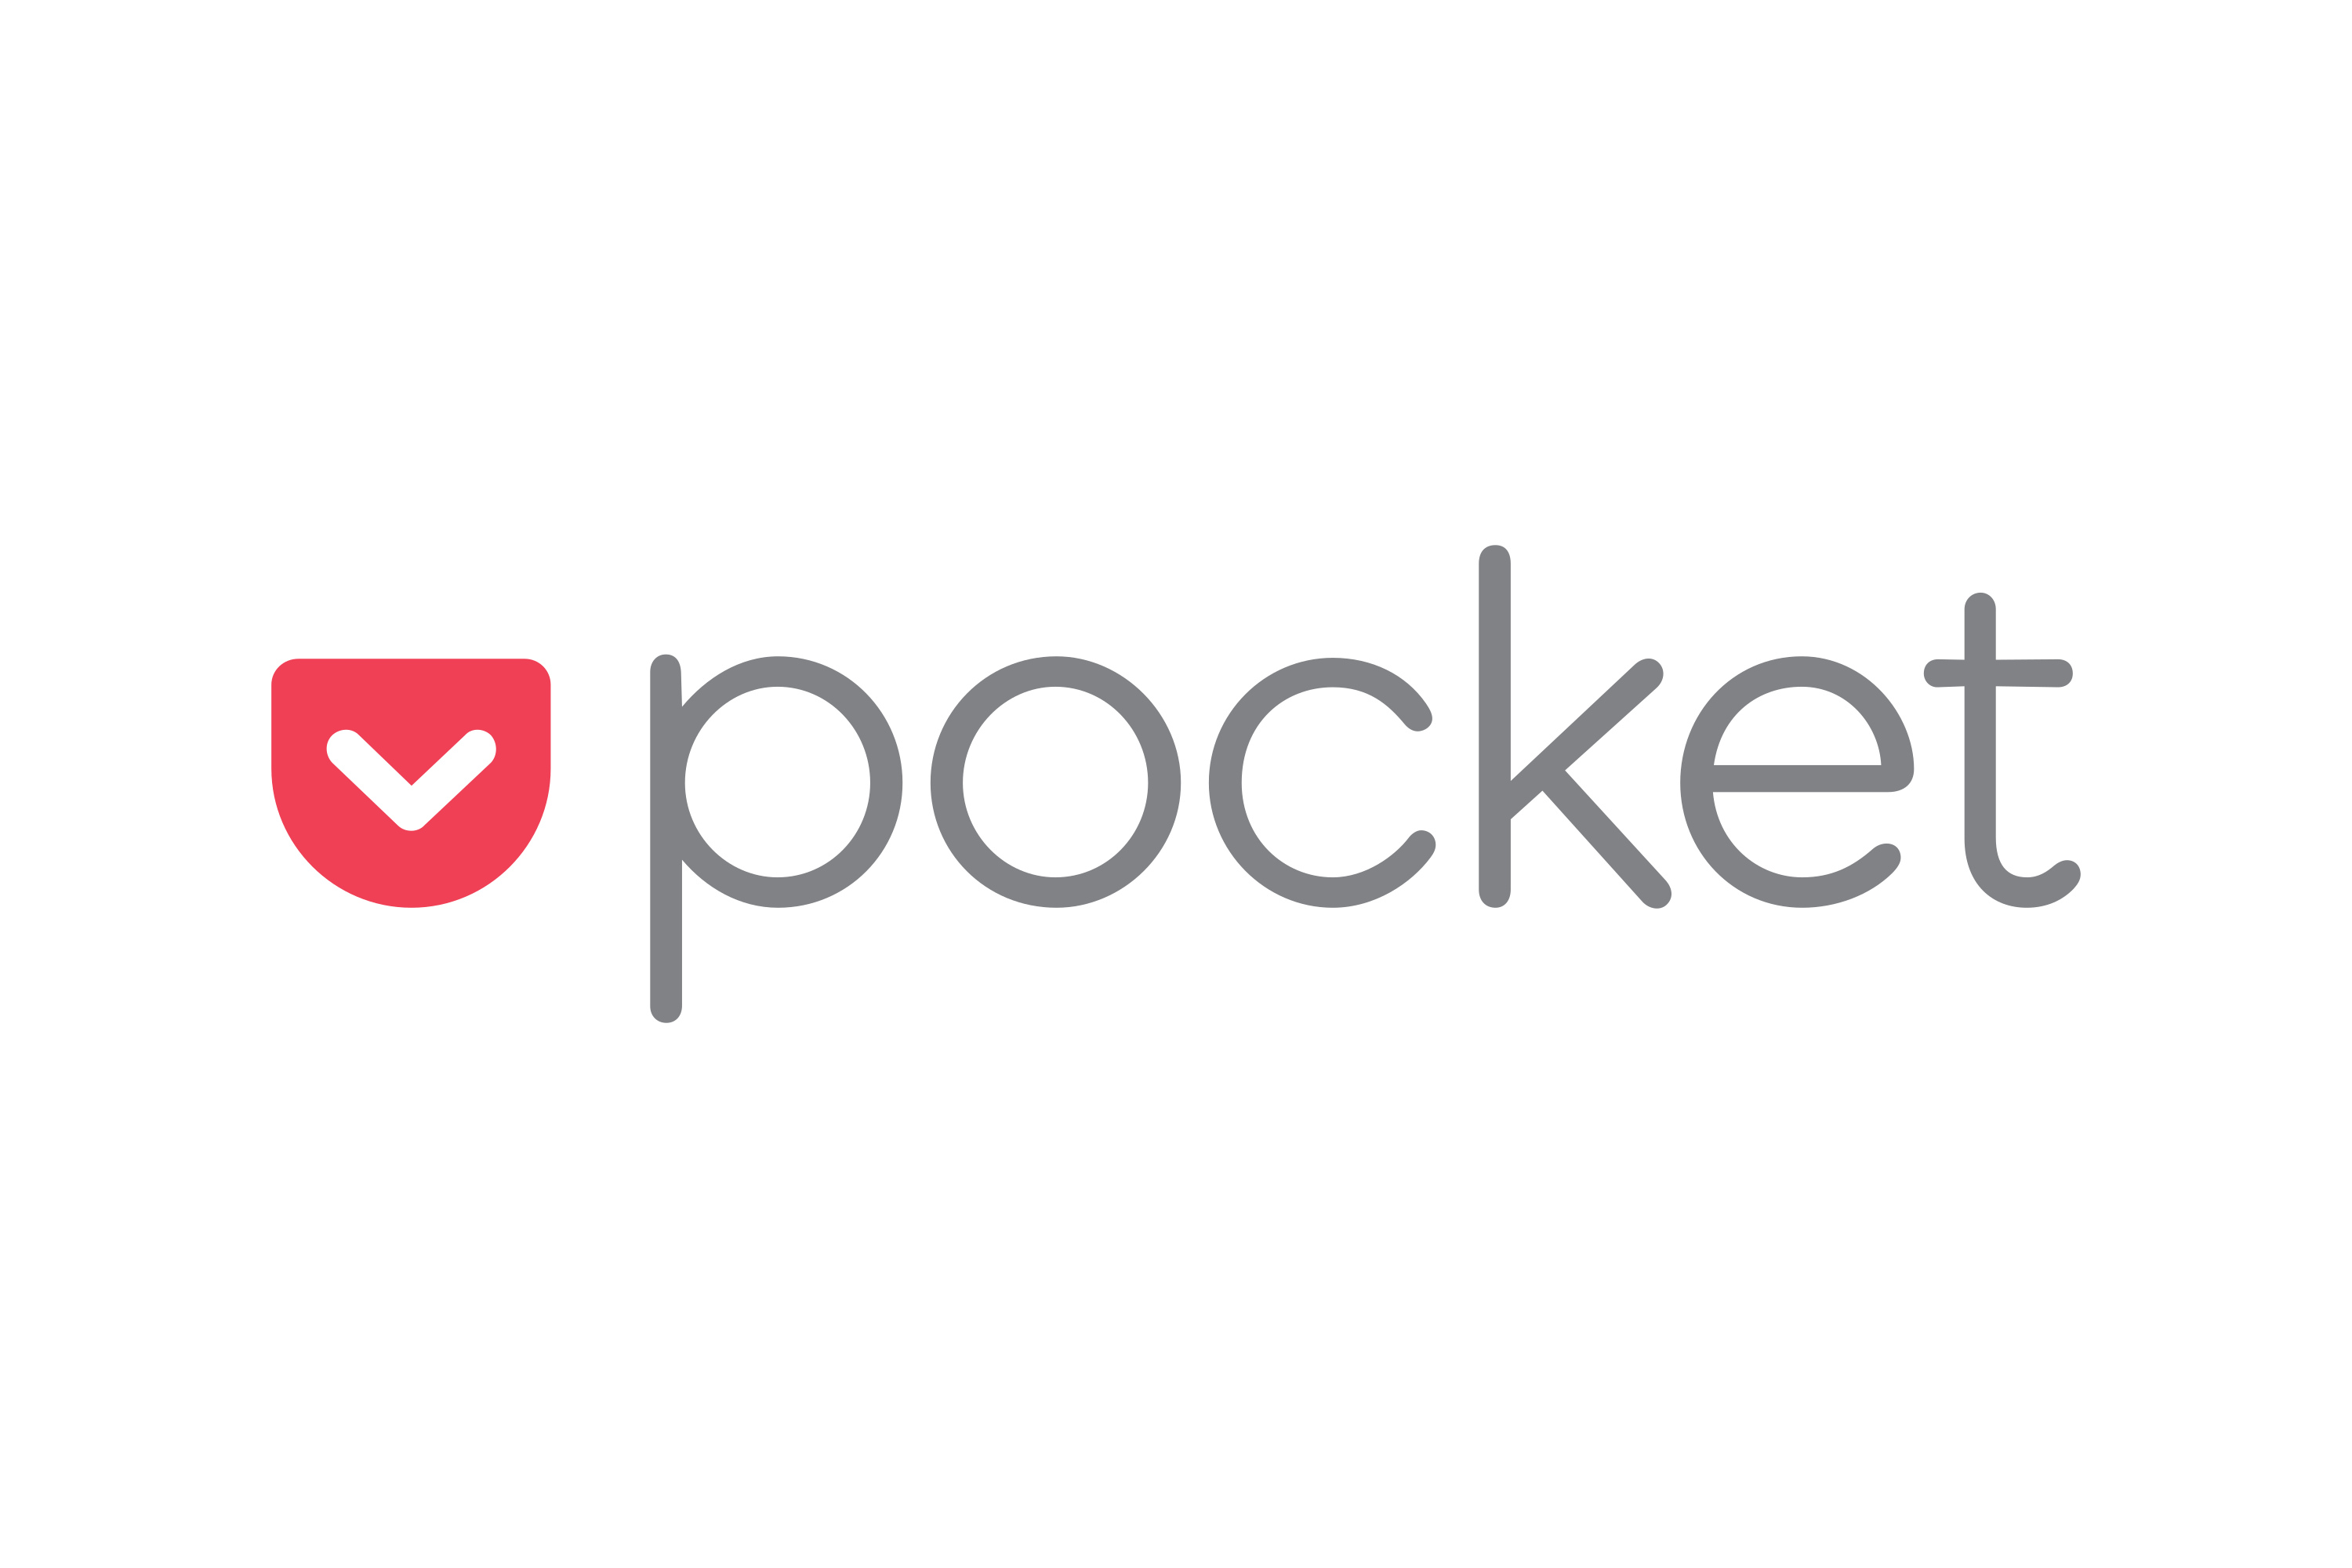 Pocket Logo PNG - 177954